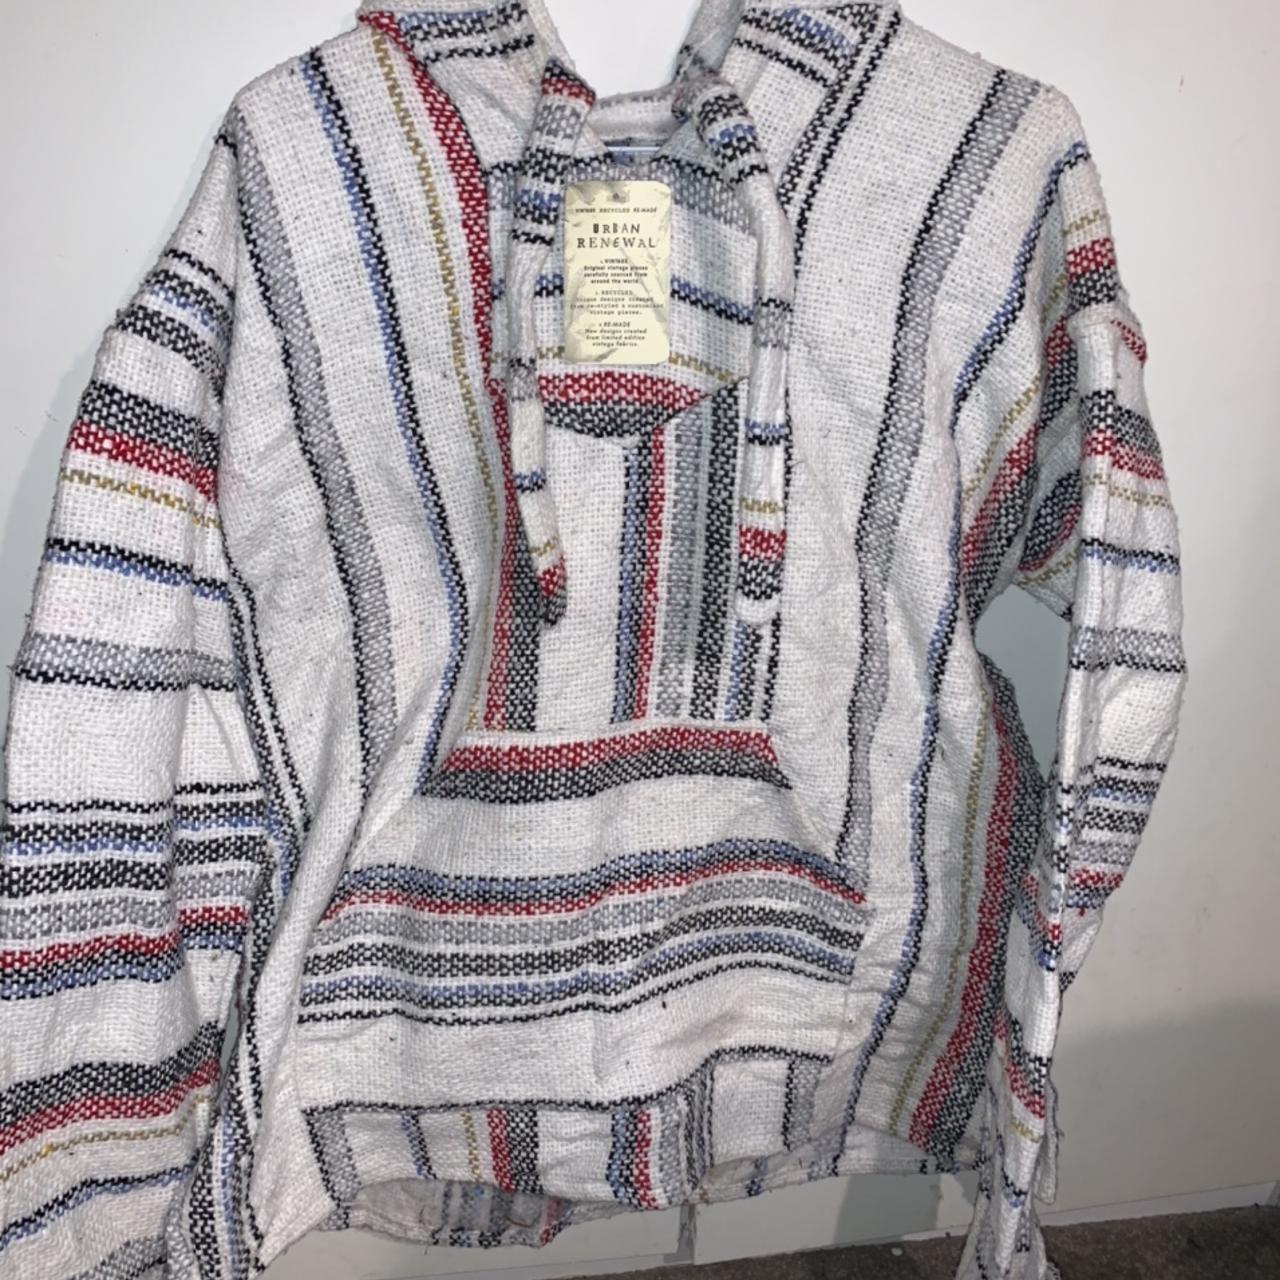 Vintage Urban Renewal striped hoodie in size medium,... - Depop